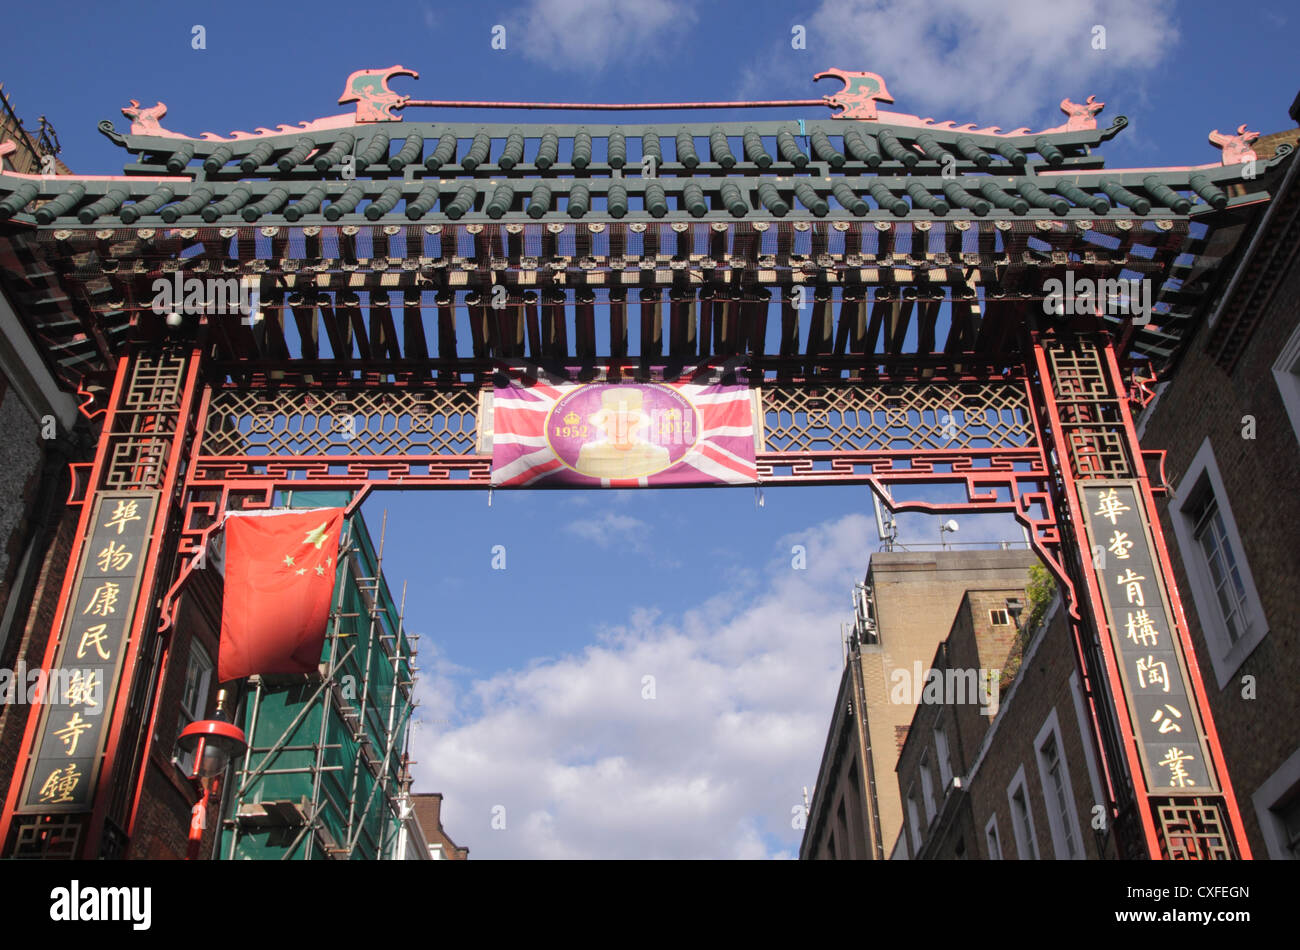 Porte d'entrée du quartier chinois de la rue Gerrard à Londres Banque D'Images